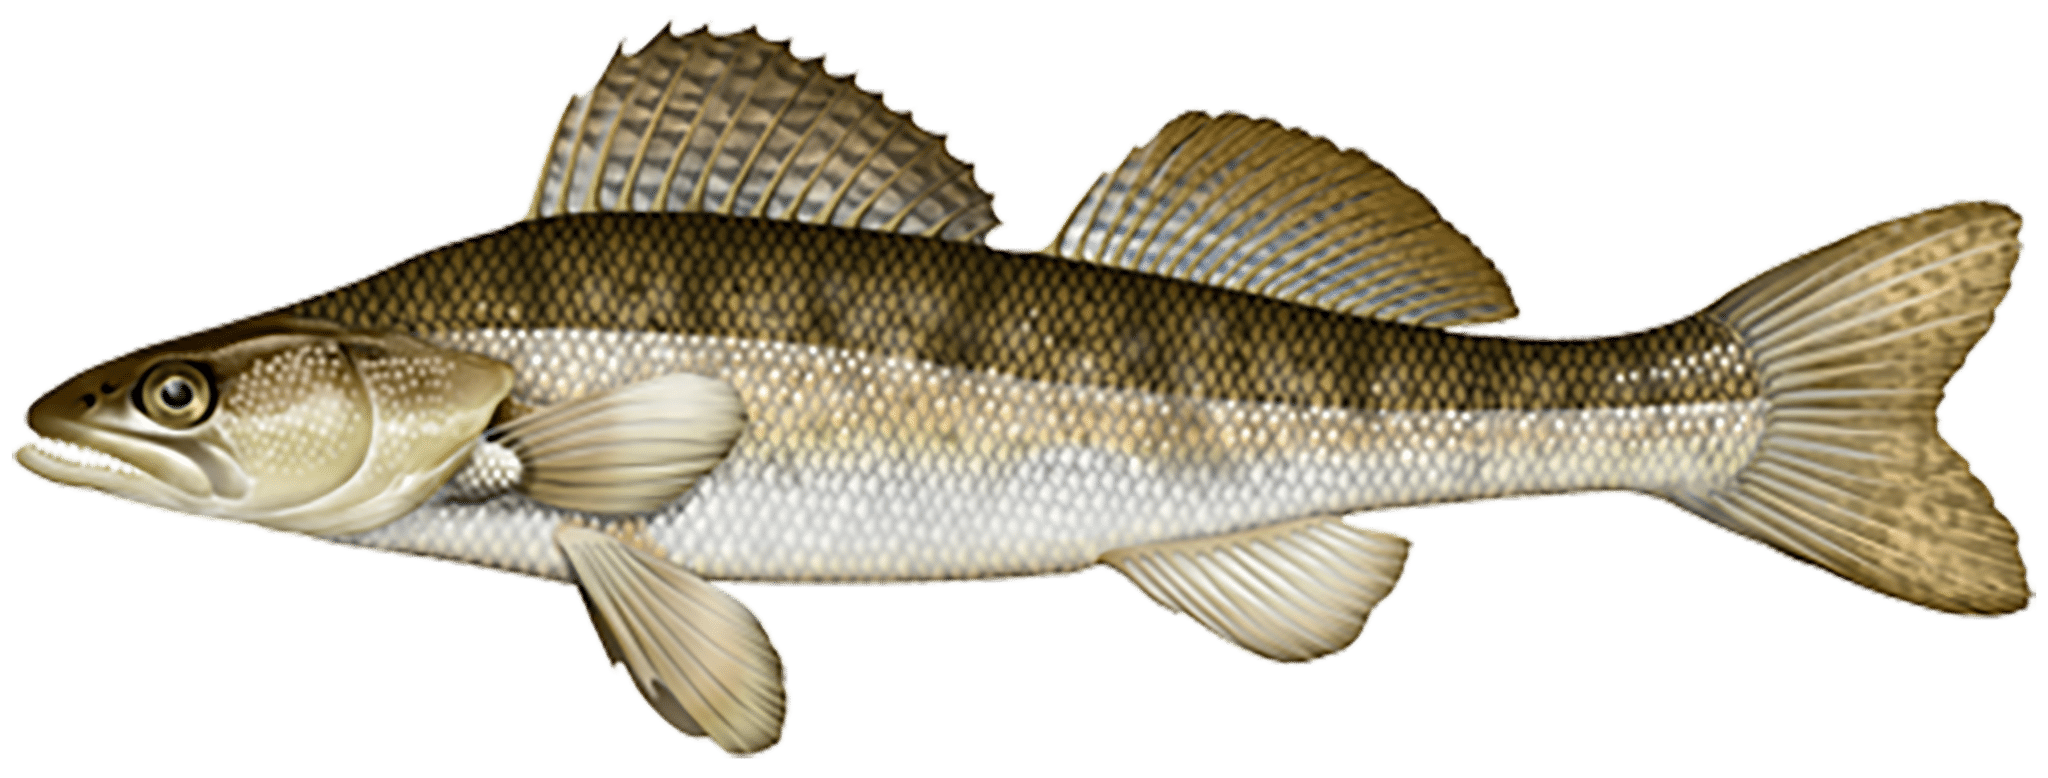 Carnasport : Fiches techniques sur les poissons carnassiers